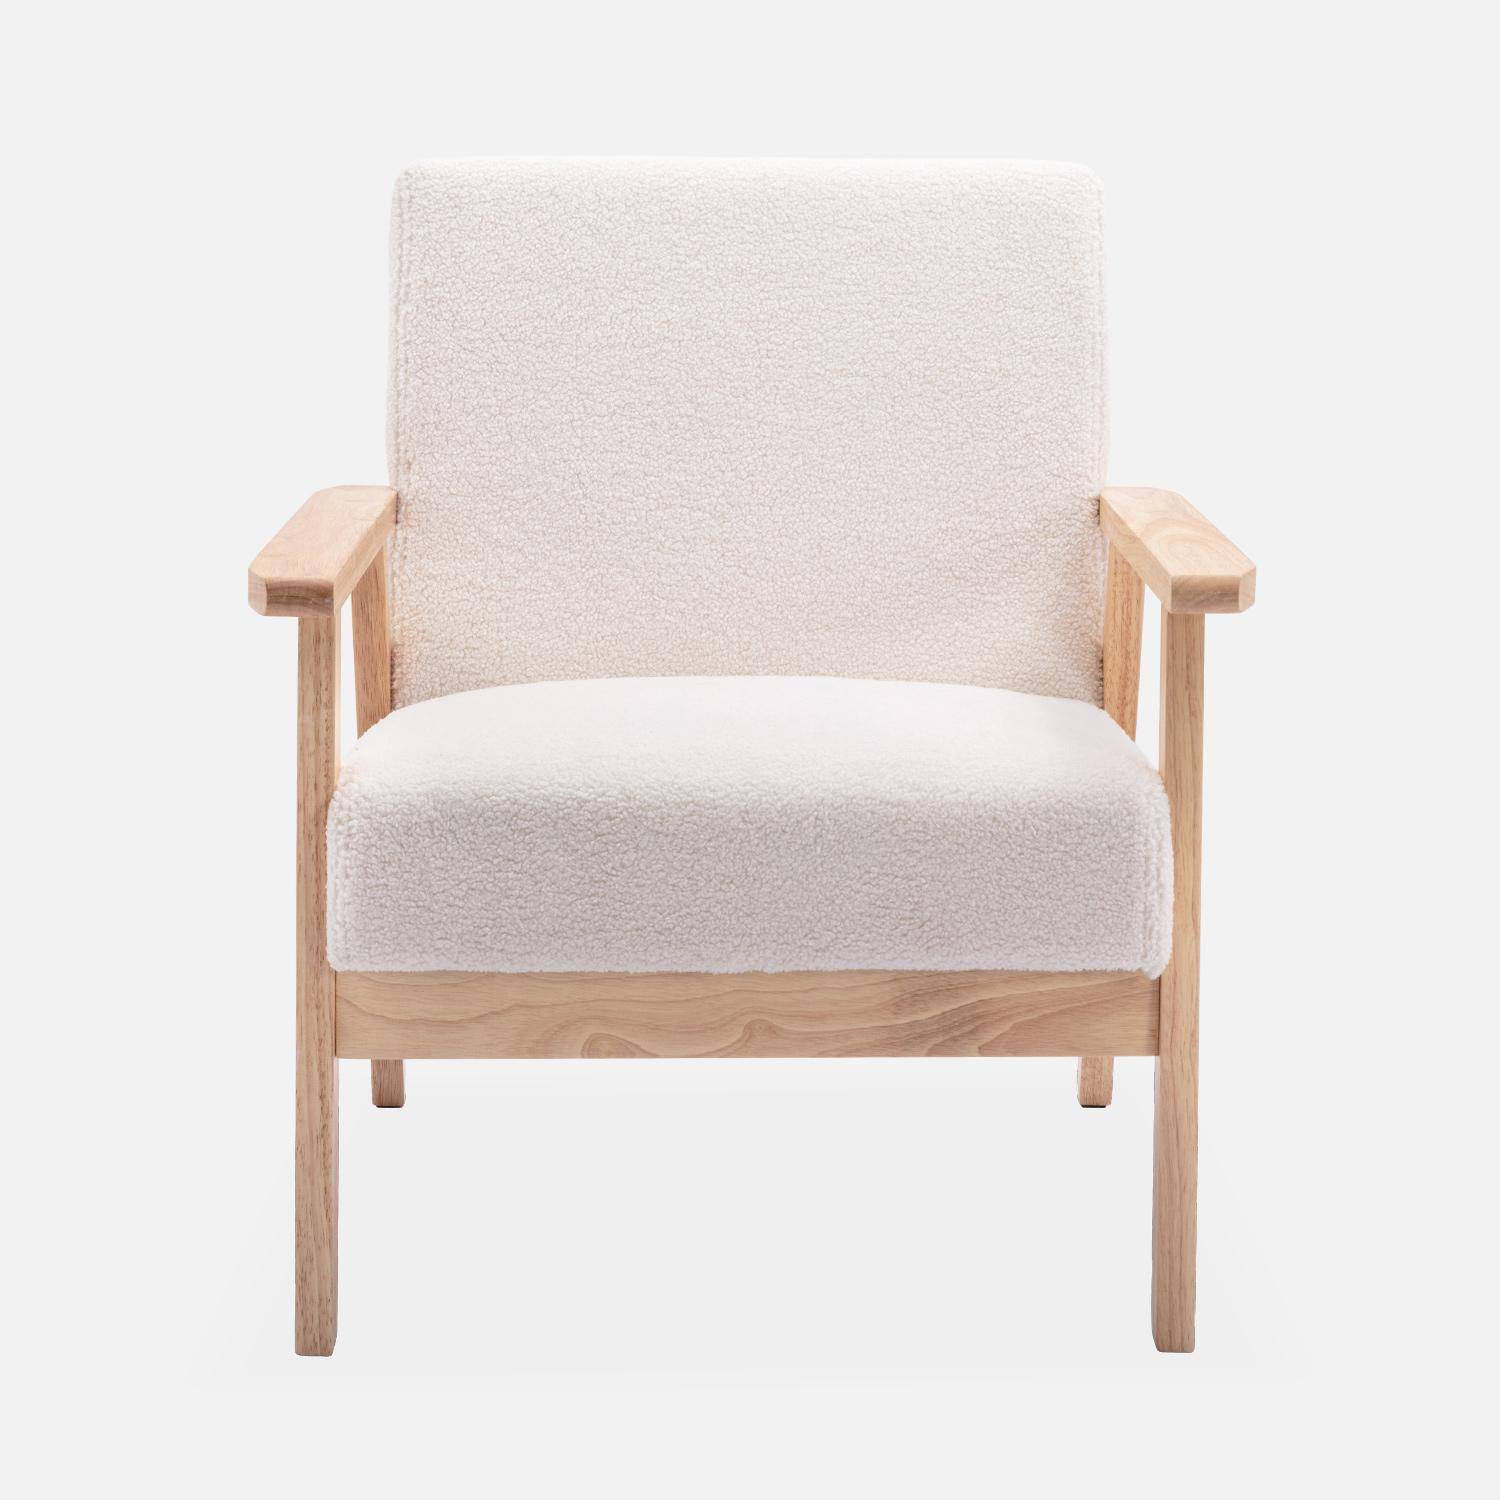 Banquette et fauteuil en bois et tissu bouclette, Isak, L 114 x l 69,5 x H 73cm Photo5